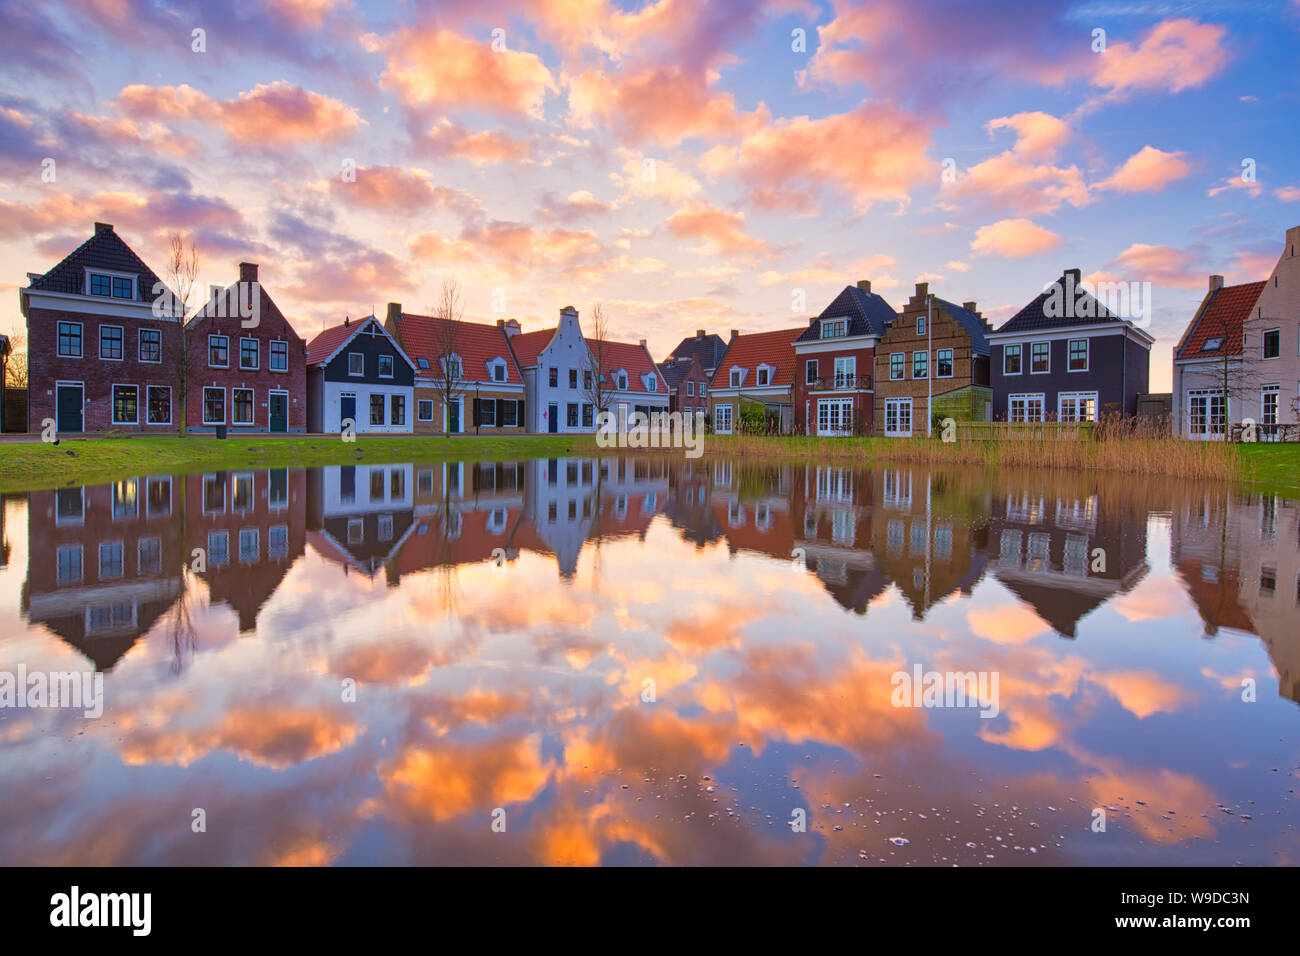 Maisons hollandaises traditionnelles avec un canal et un magnifique coucher de soleil avec des reflets dans l'eau - Voyage d'image - l'image de voyage - Pays-Bas Banque D'Images